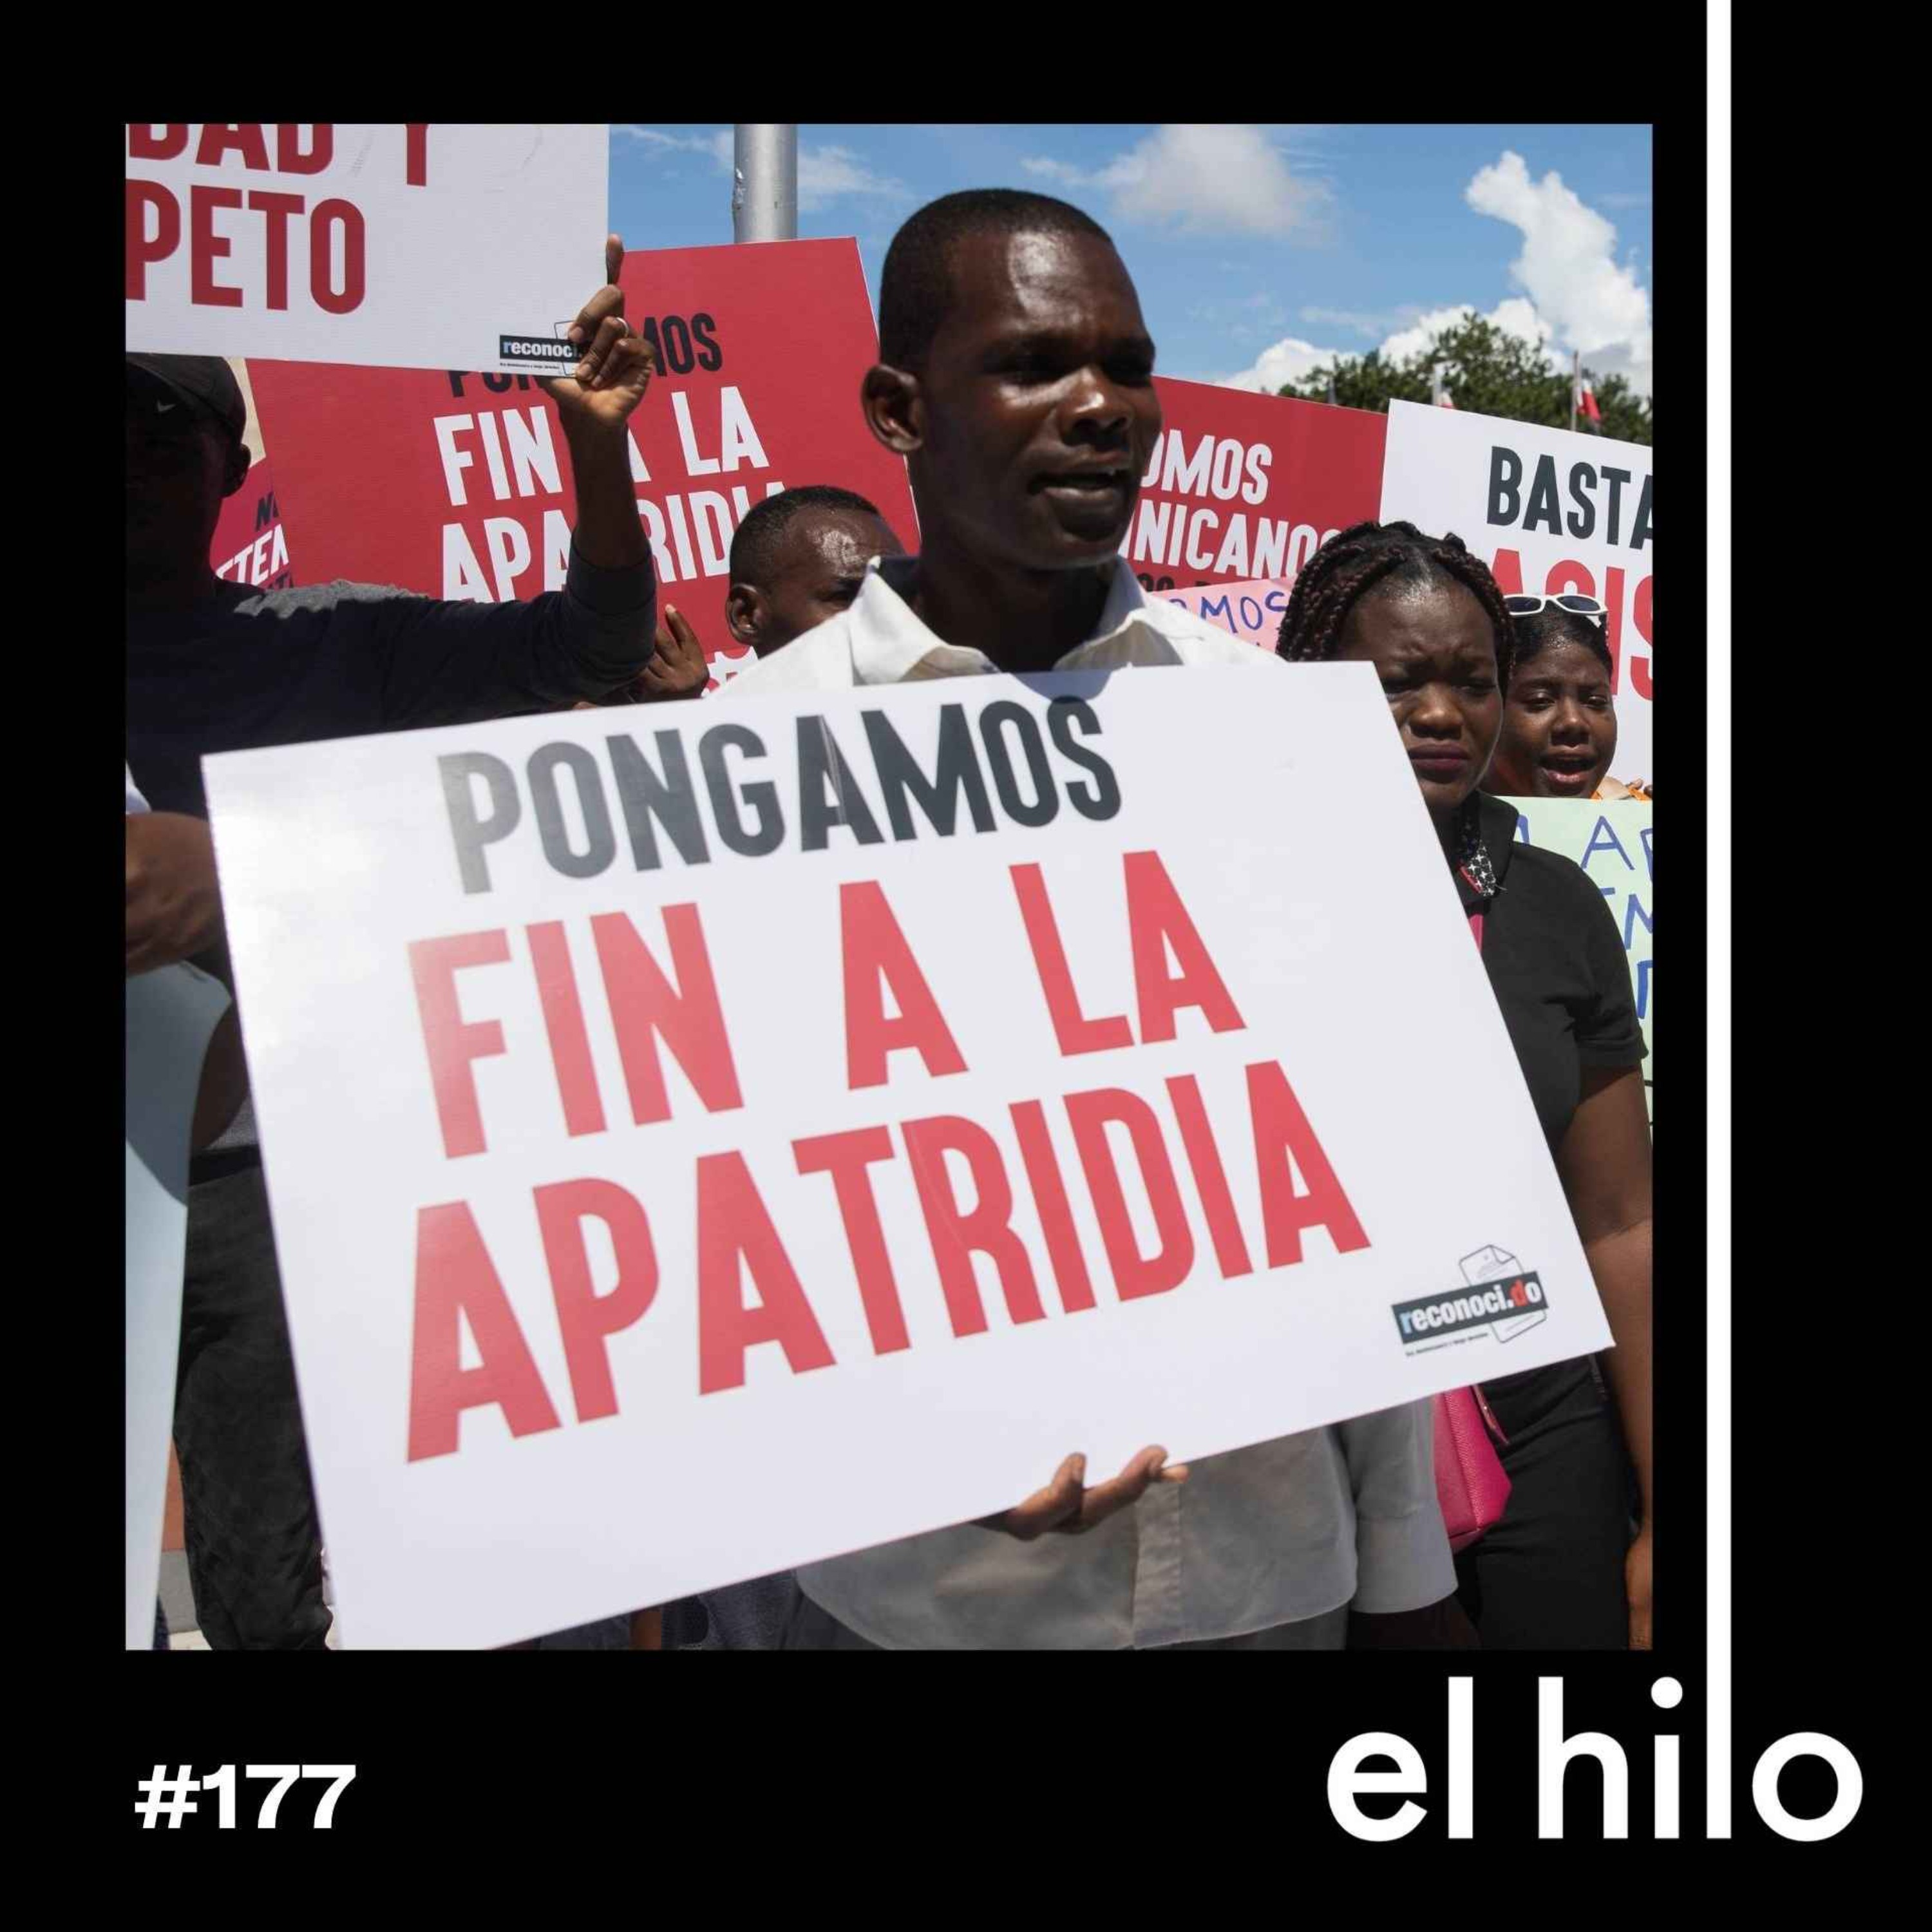 Sentenciados a vivir sin patria: 10 años sin derechos en República Dominicana